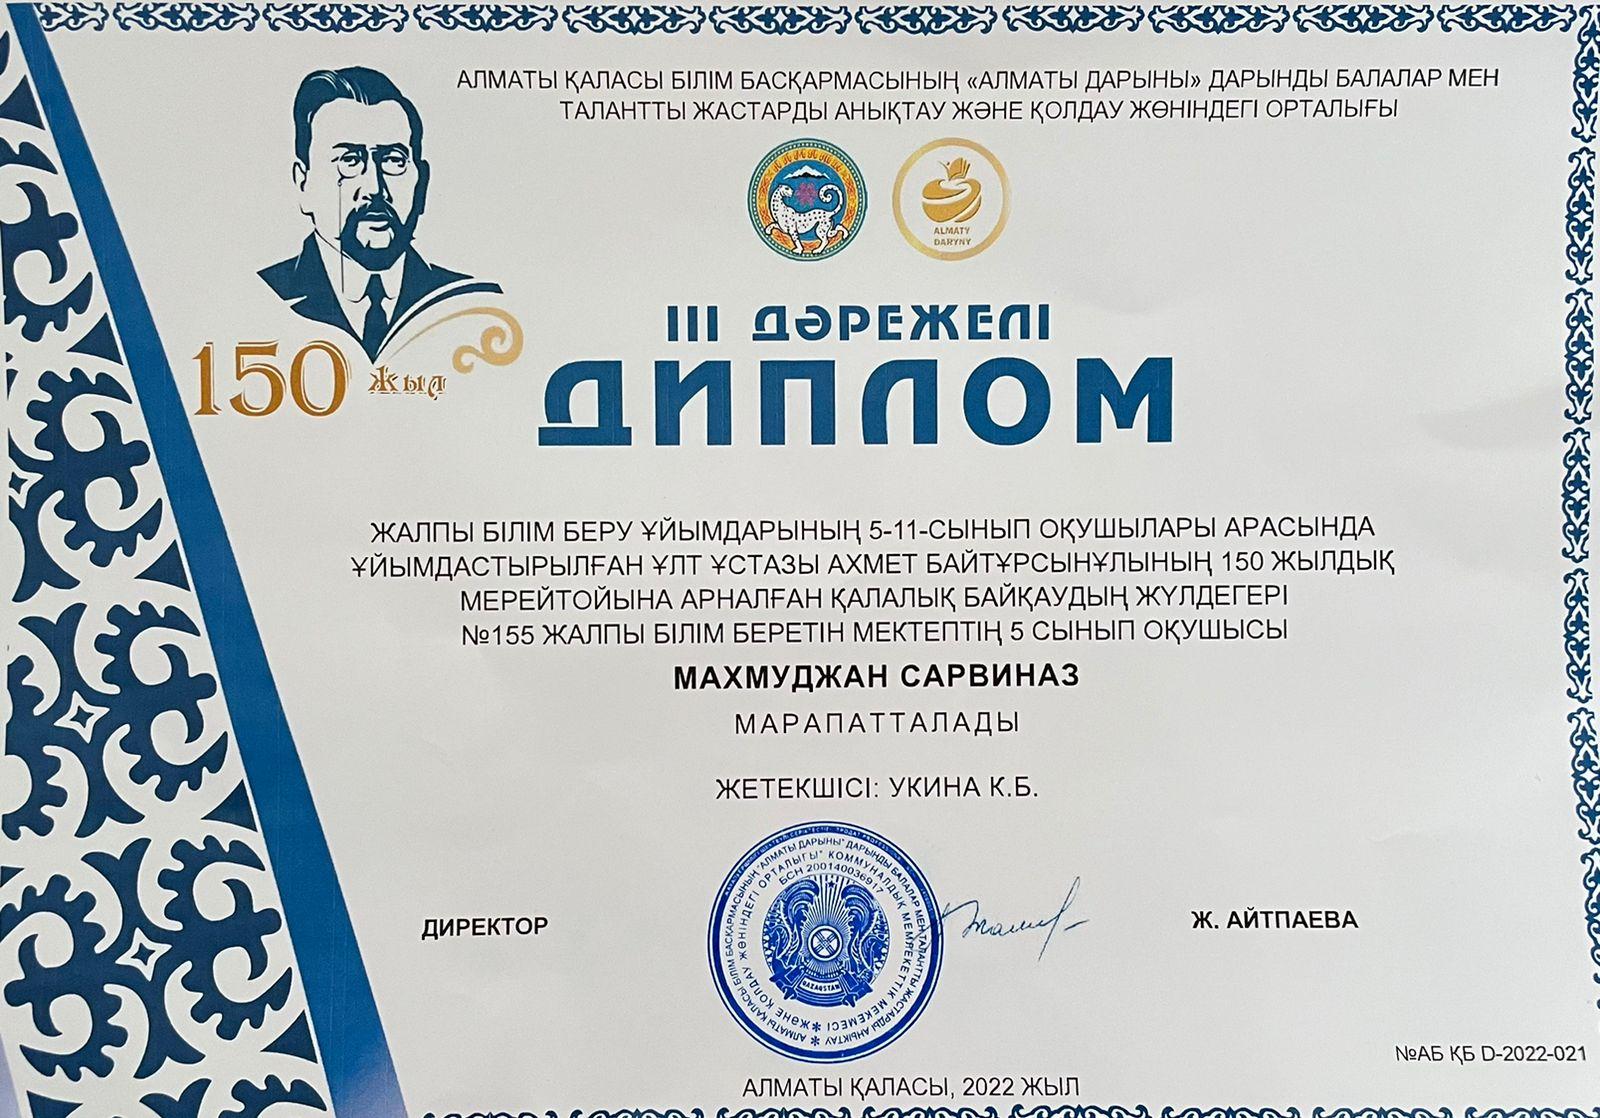 Ахмет Байтұрсынұлының 150 жылдық  қалалық байқау